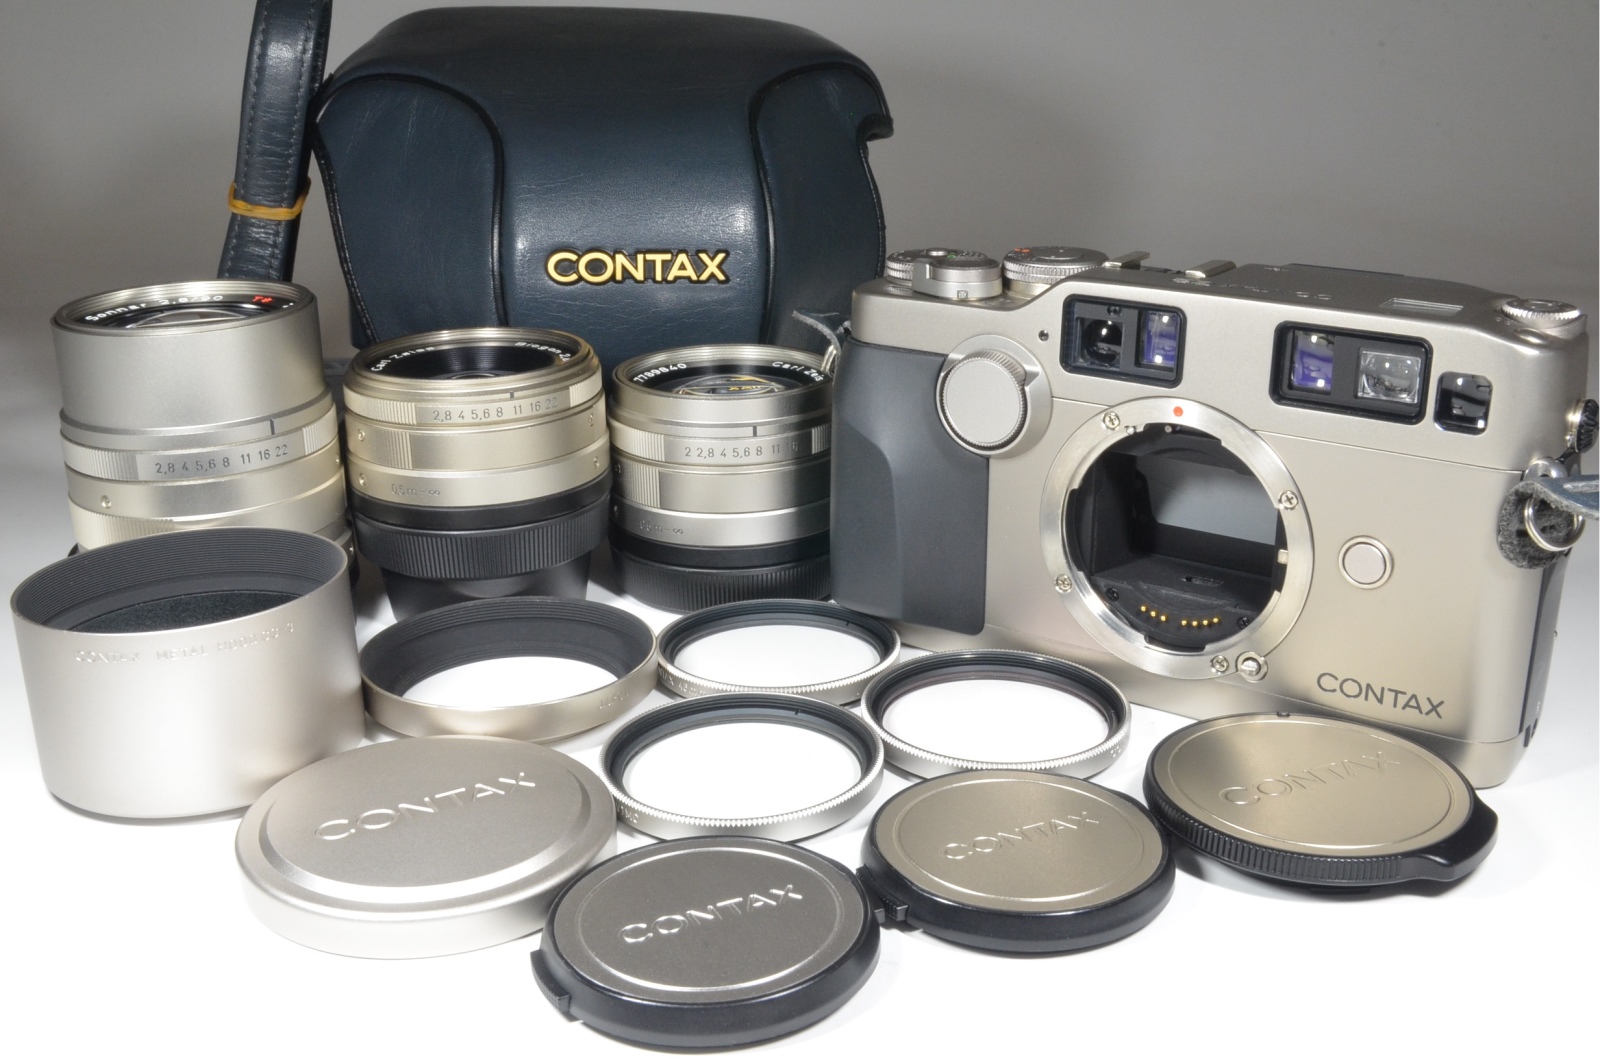 contax g2 data back, full case, planar 45mm f2, biogon 28mm f2.8, sonnar 90mm f2.8